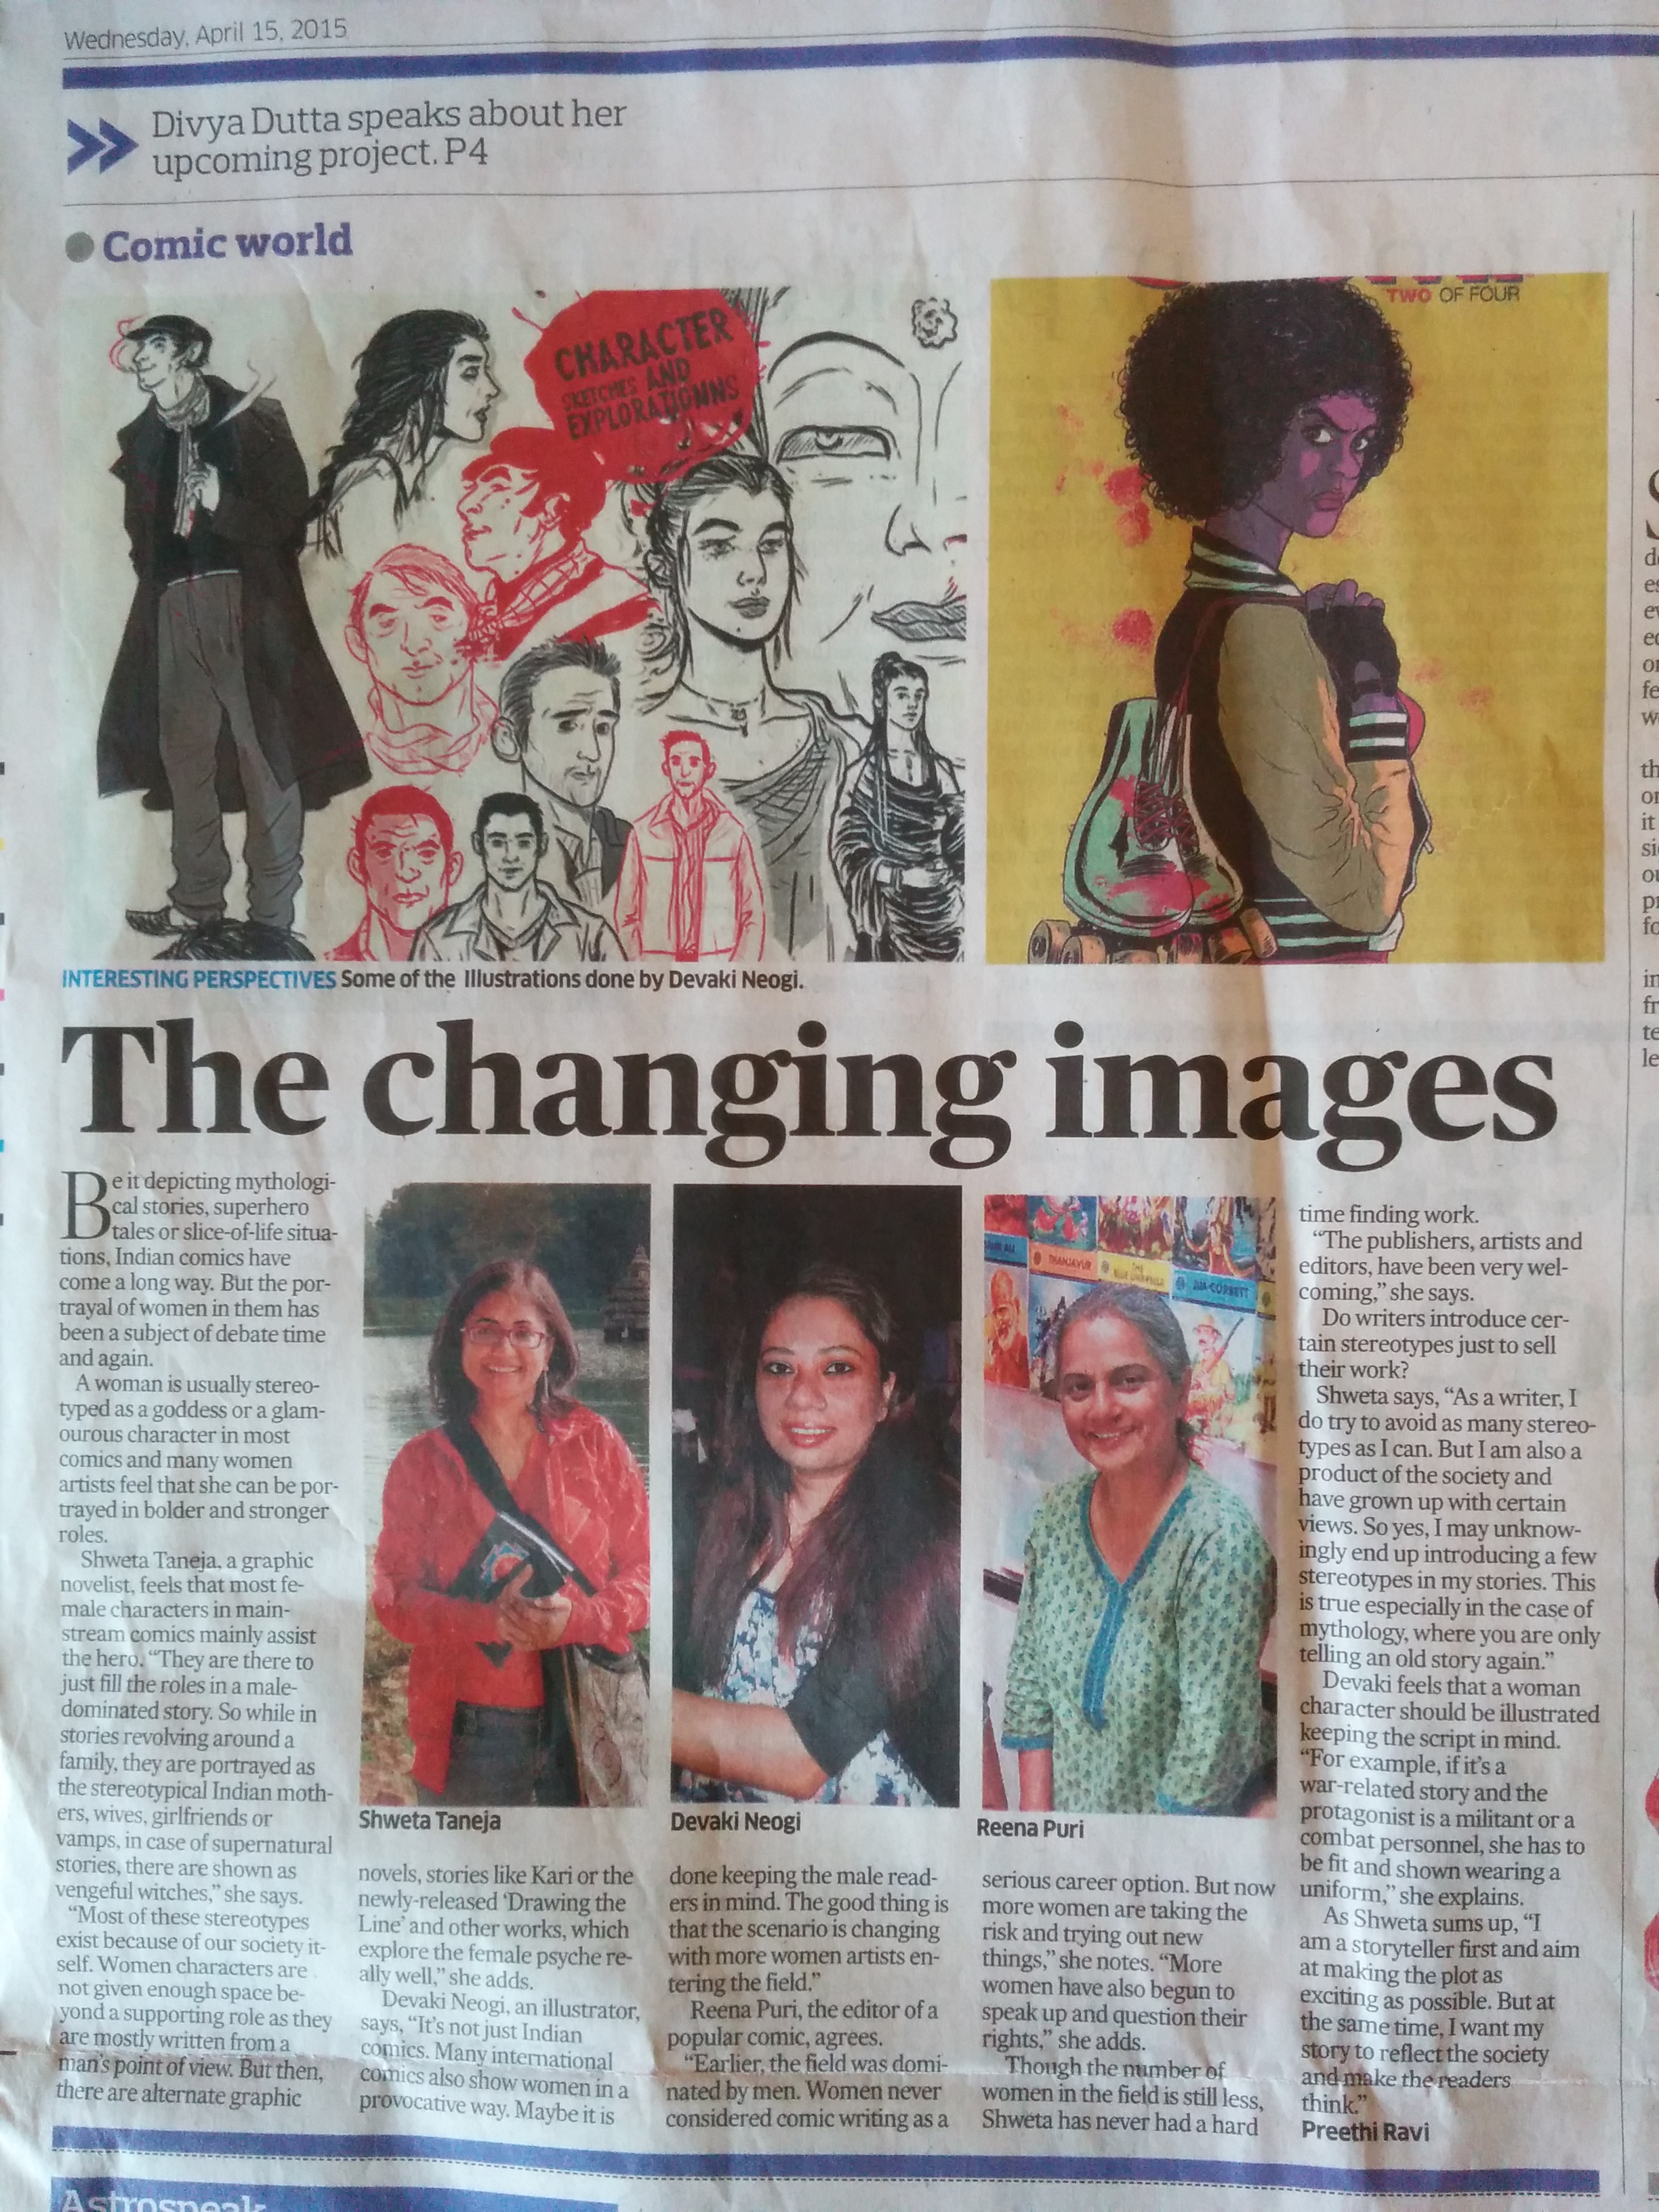 Deccan Herald on women in comics